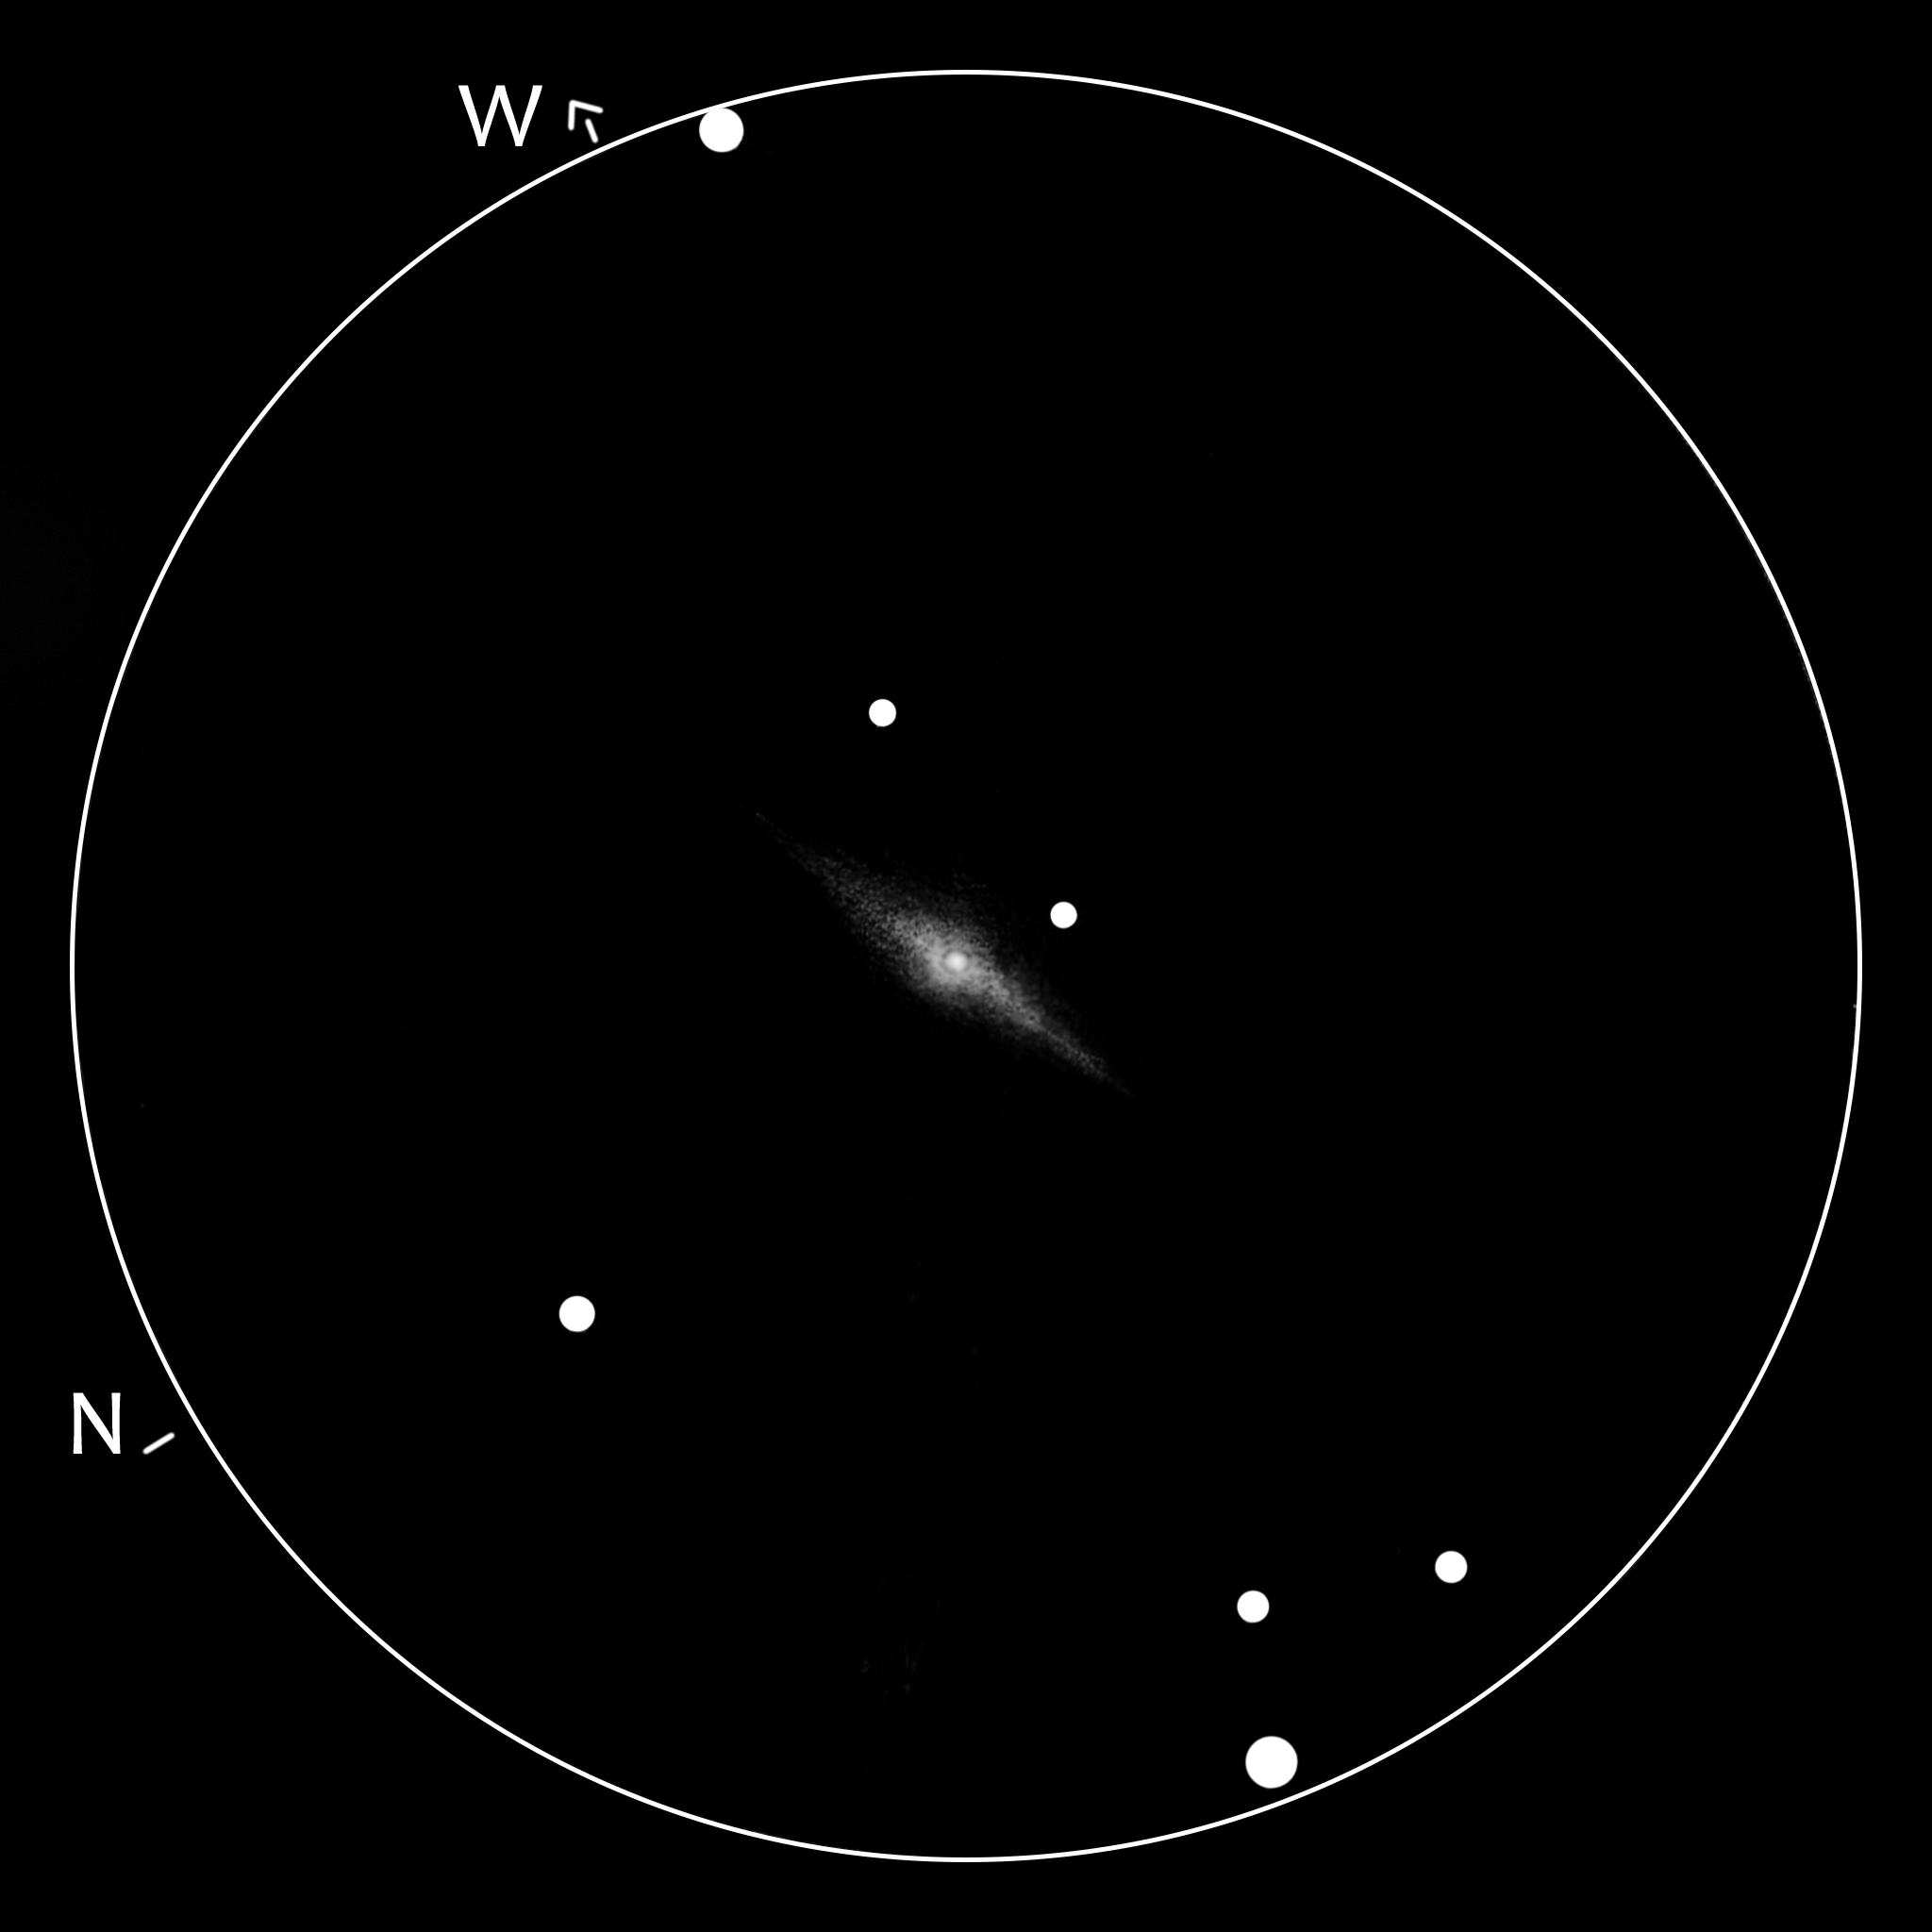 NGC 4526